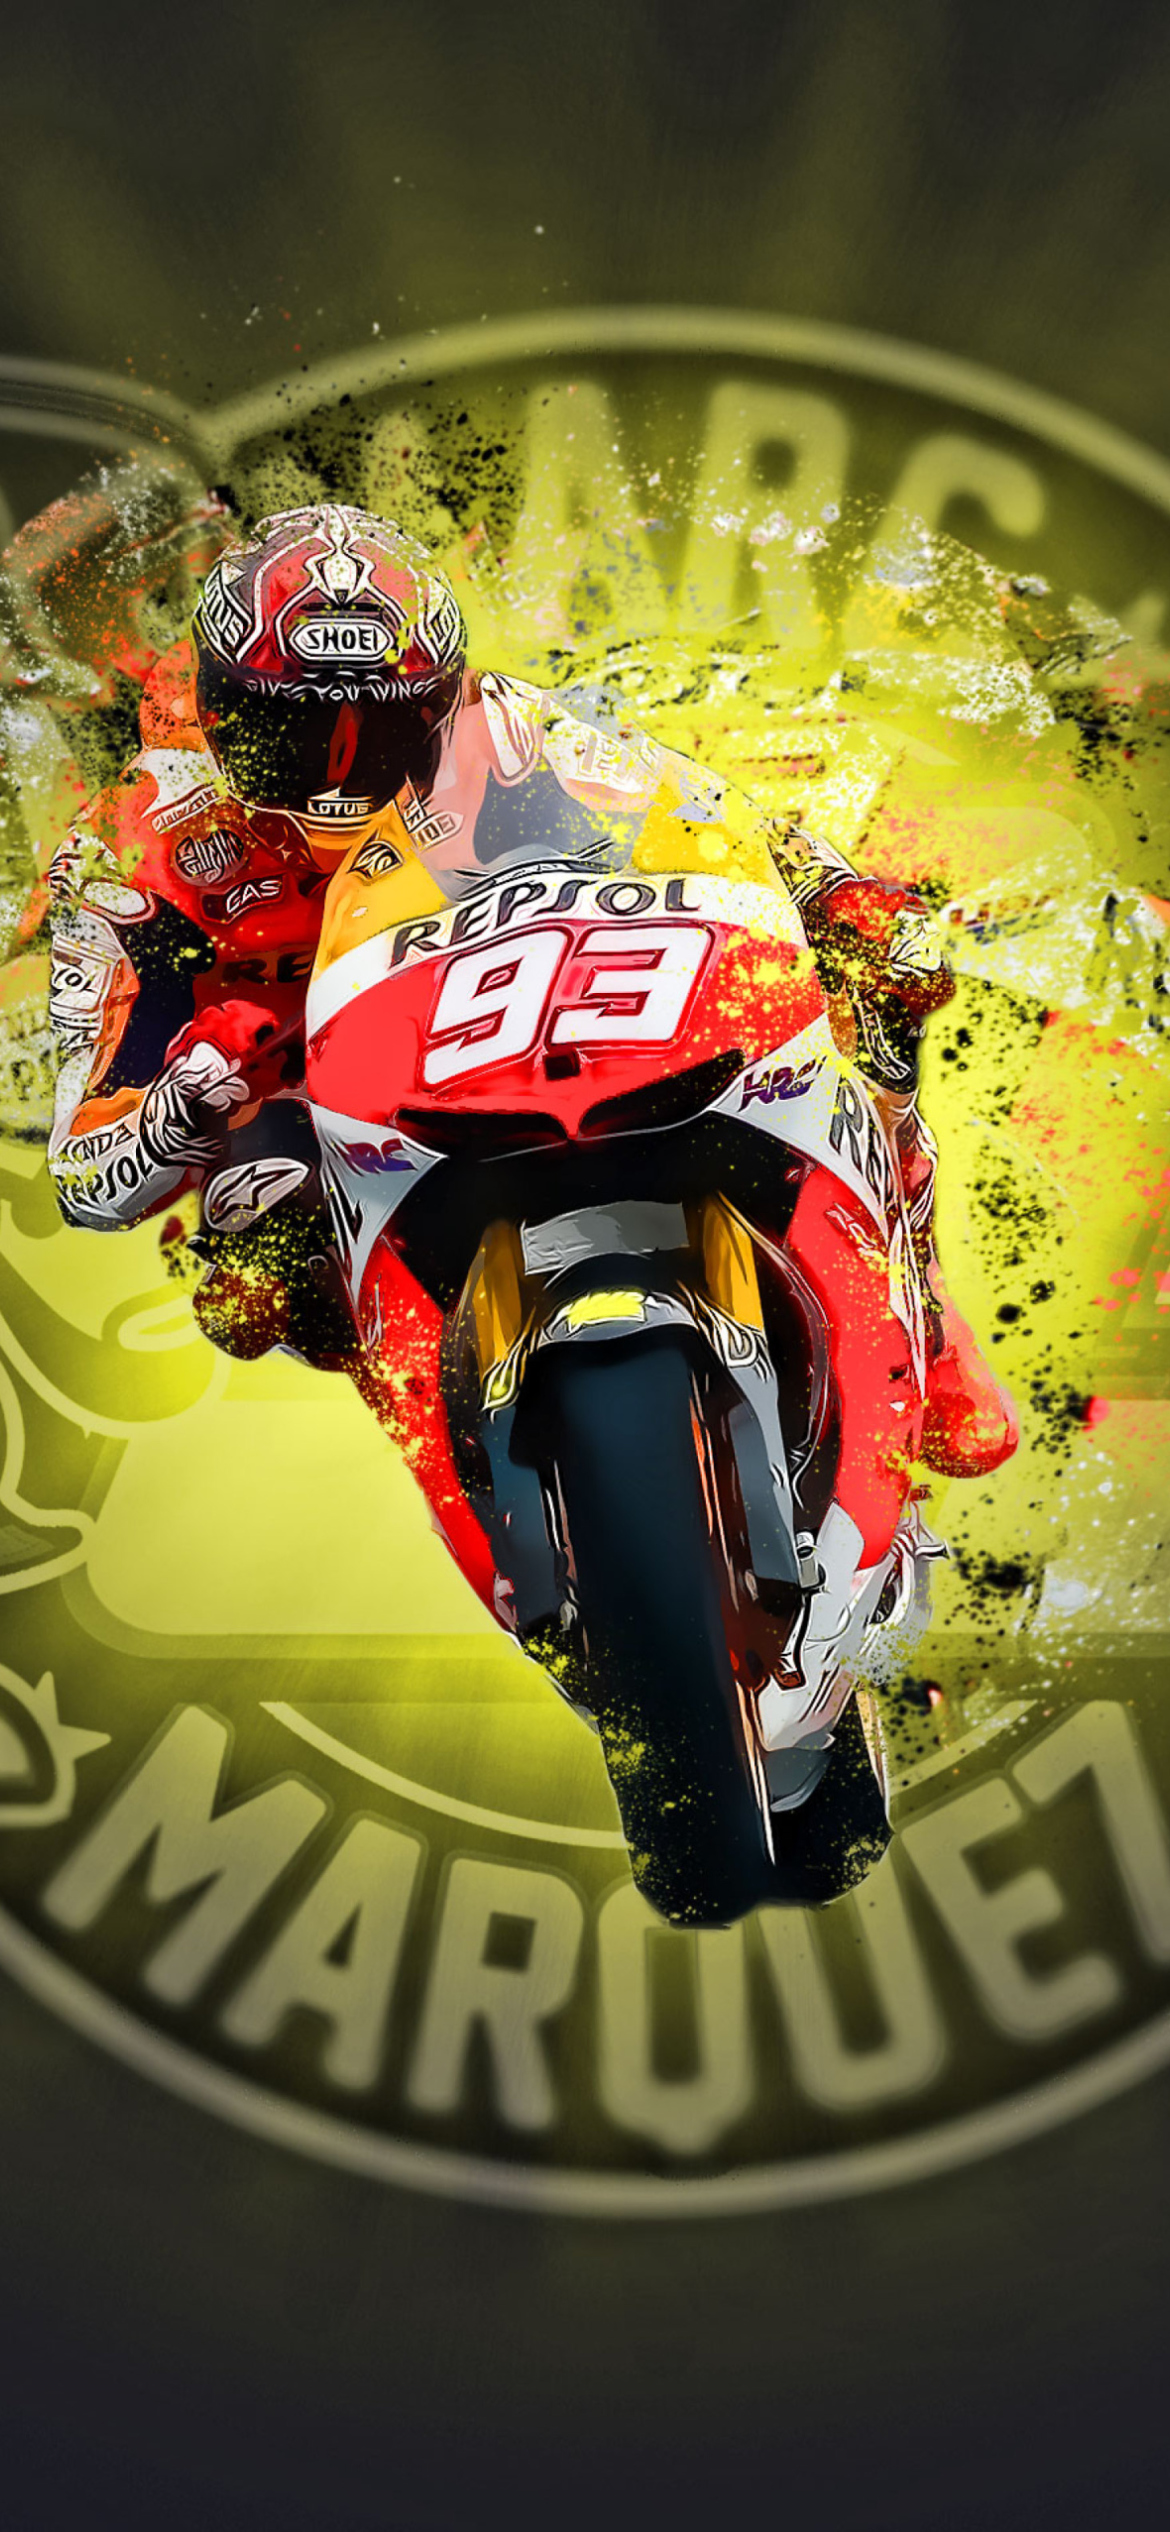 Marc Marquez - Moto GP screenshot #1 1170x2532